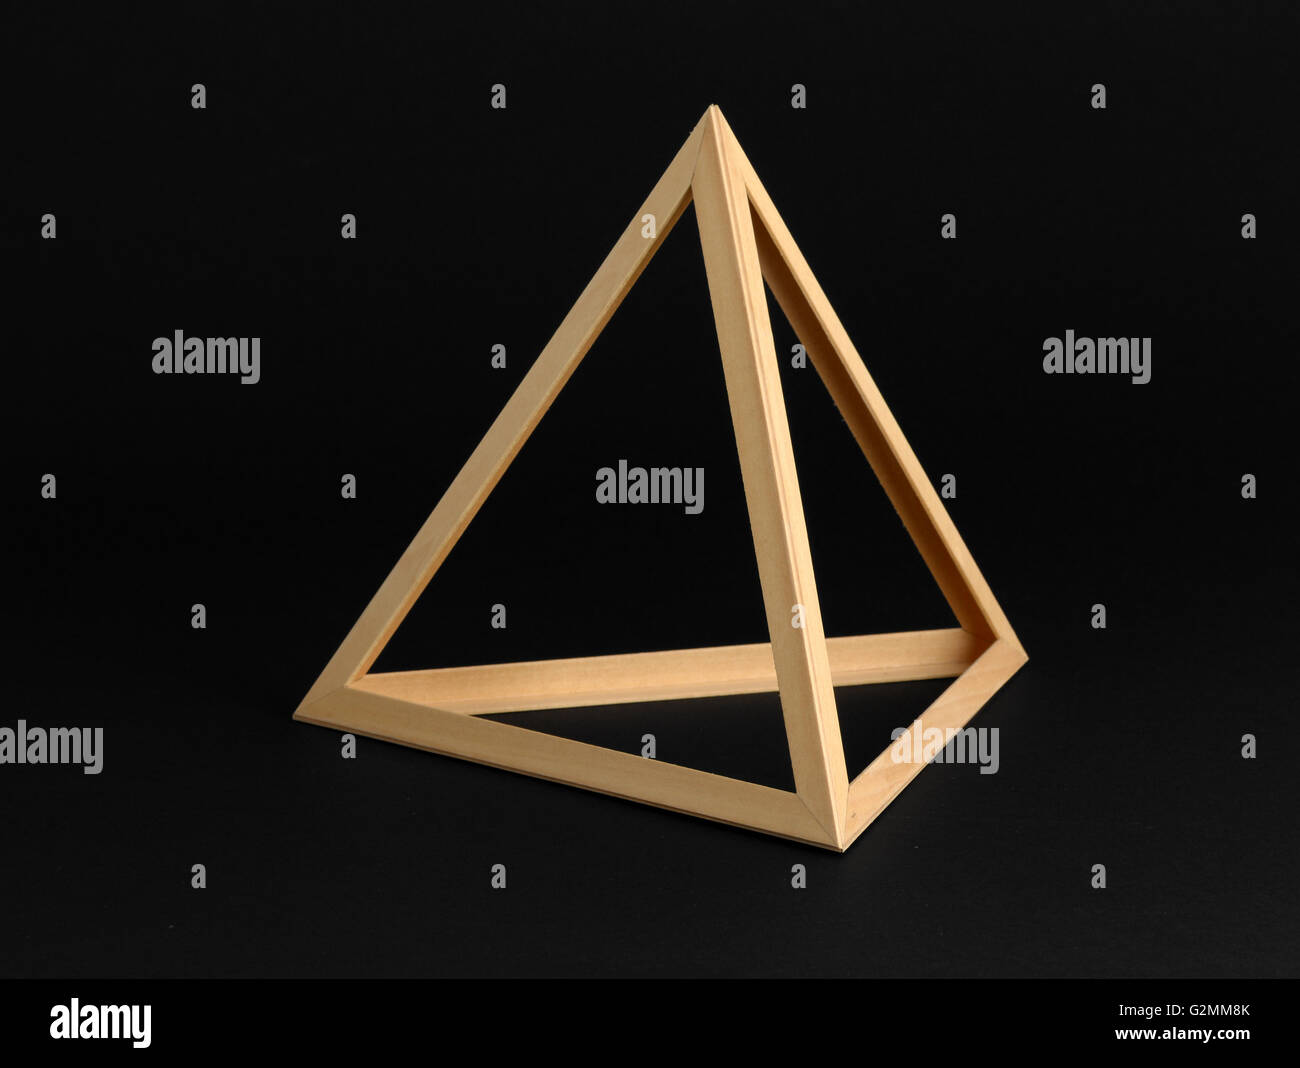 Tres dimensiones geométricas bastidor triangular de madera aislado en un fondo negro Foto de stock